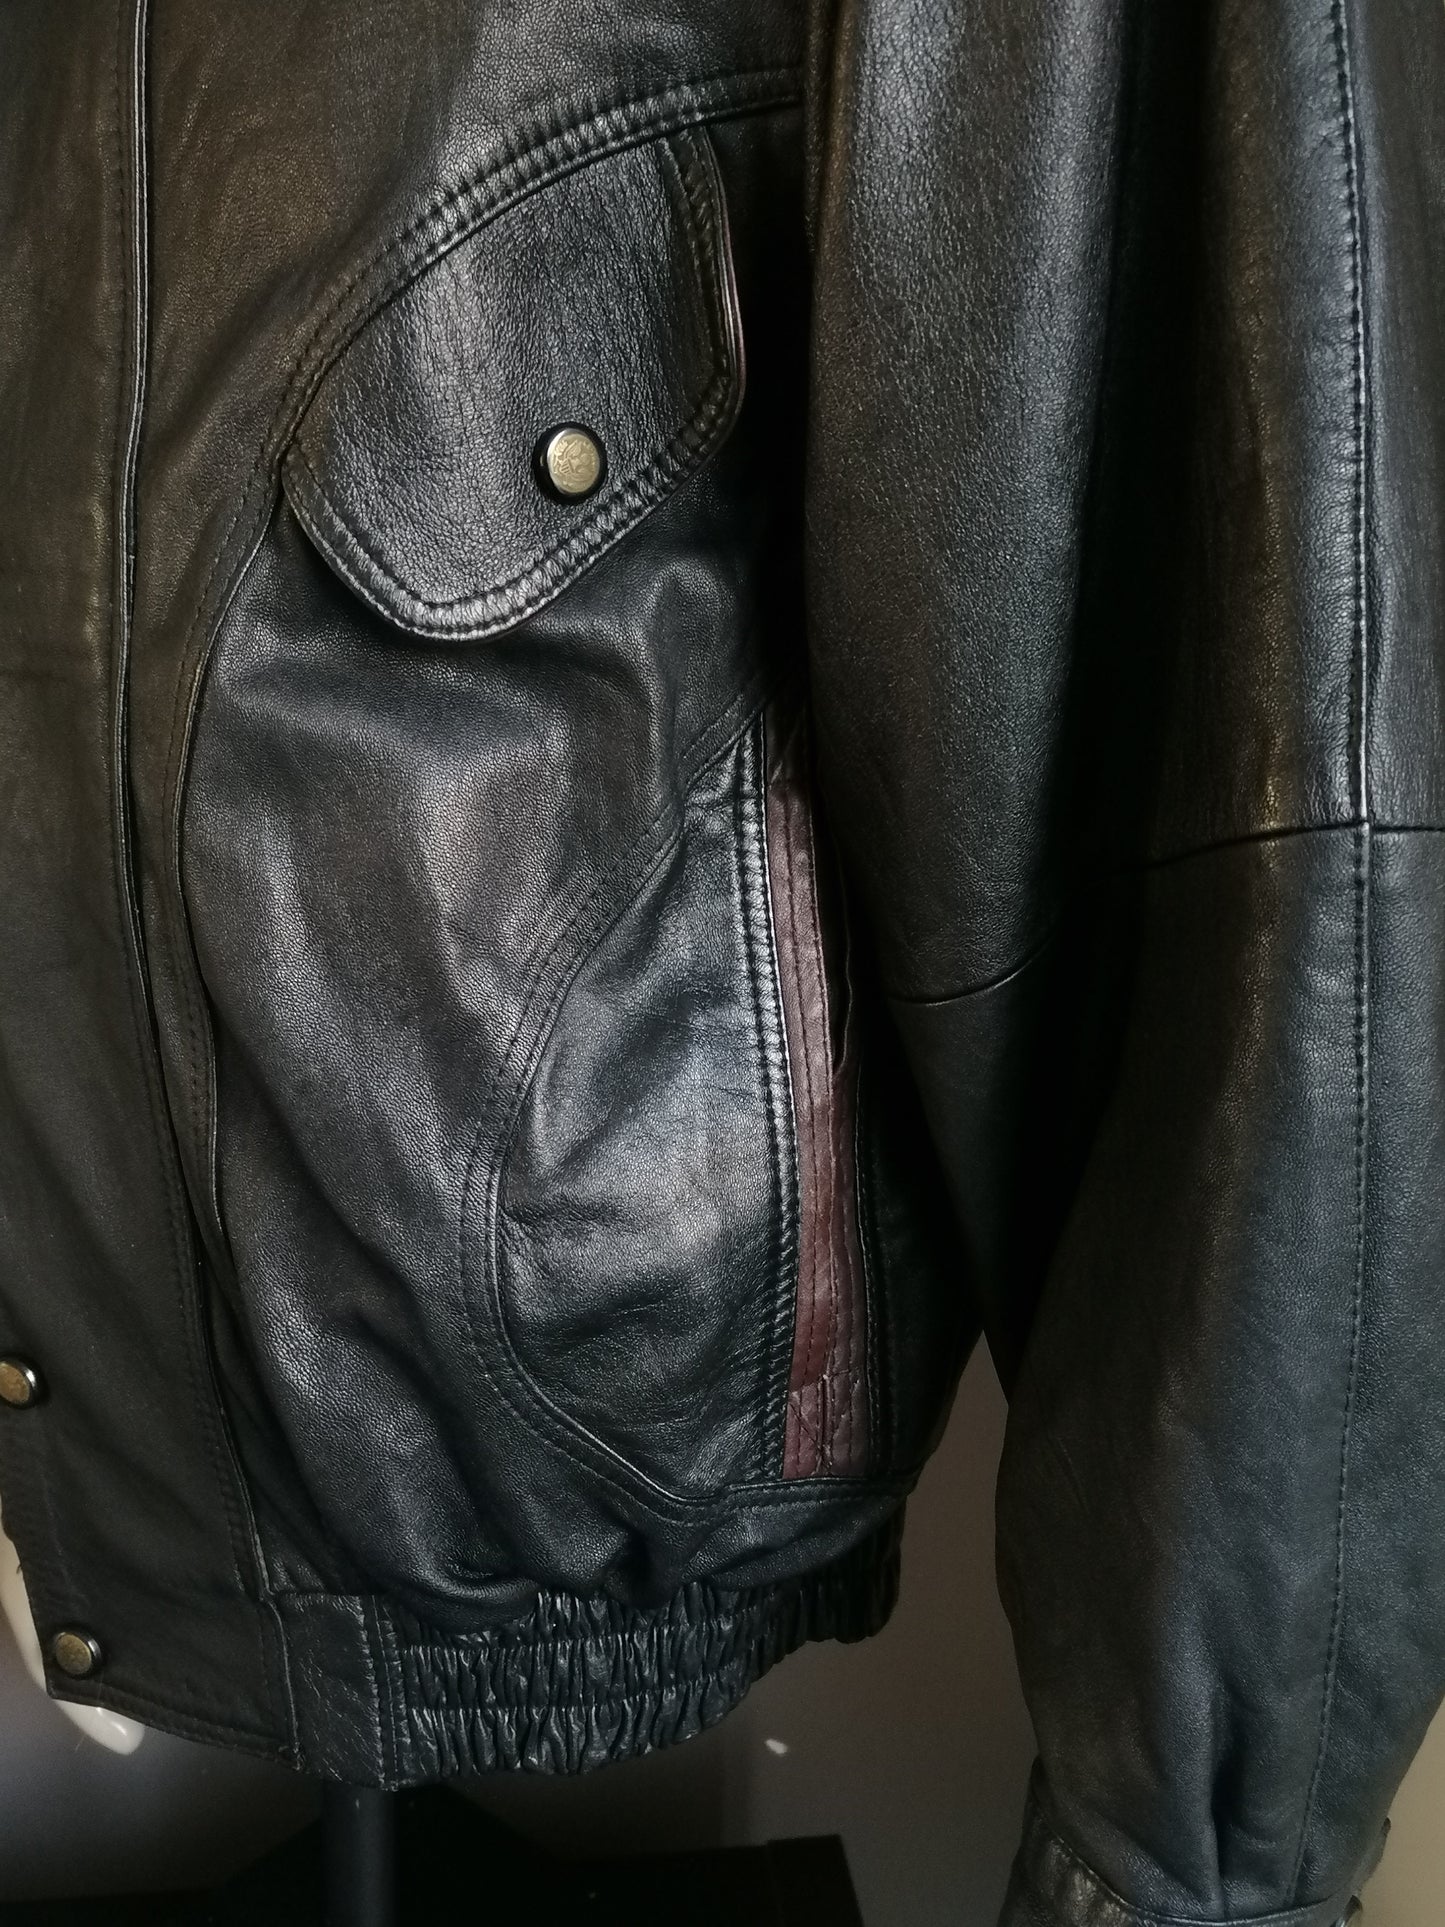 Vintage 80S-90s Lederjacke mit doppelter Verschluss. Braun schwarz gefärbt. Größe L / XL.